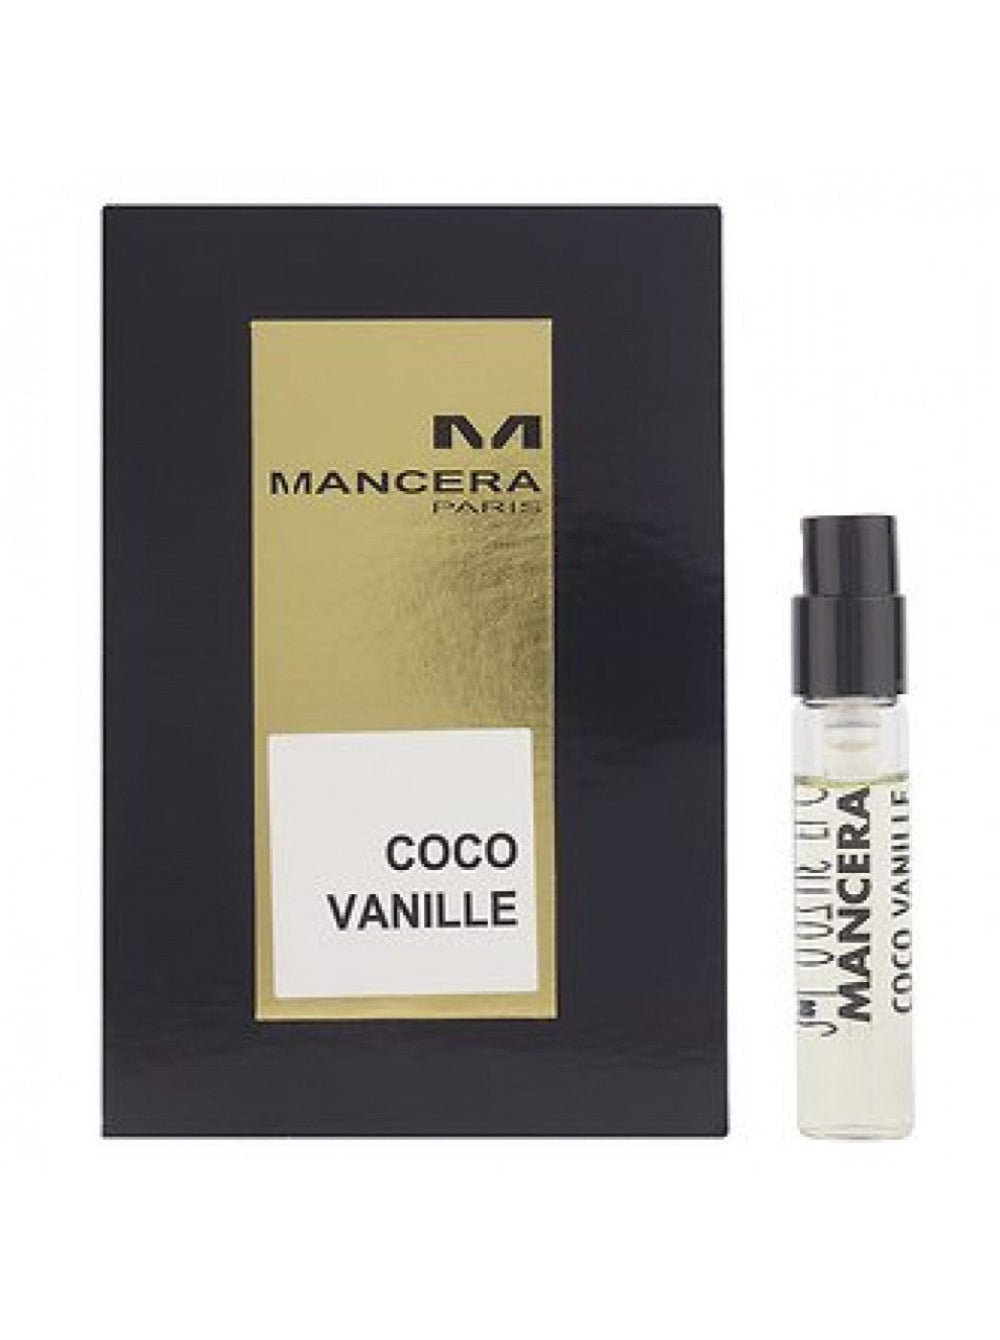 Mancera Coco Vanille Eau De Parfum Vial 2ml Pack Of 2